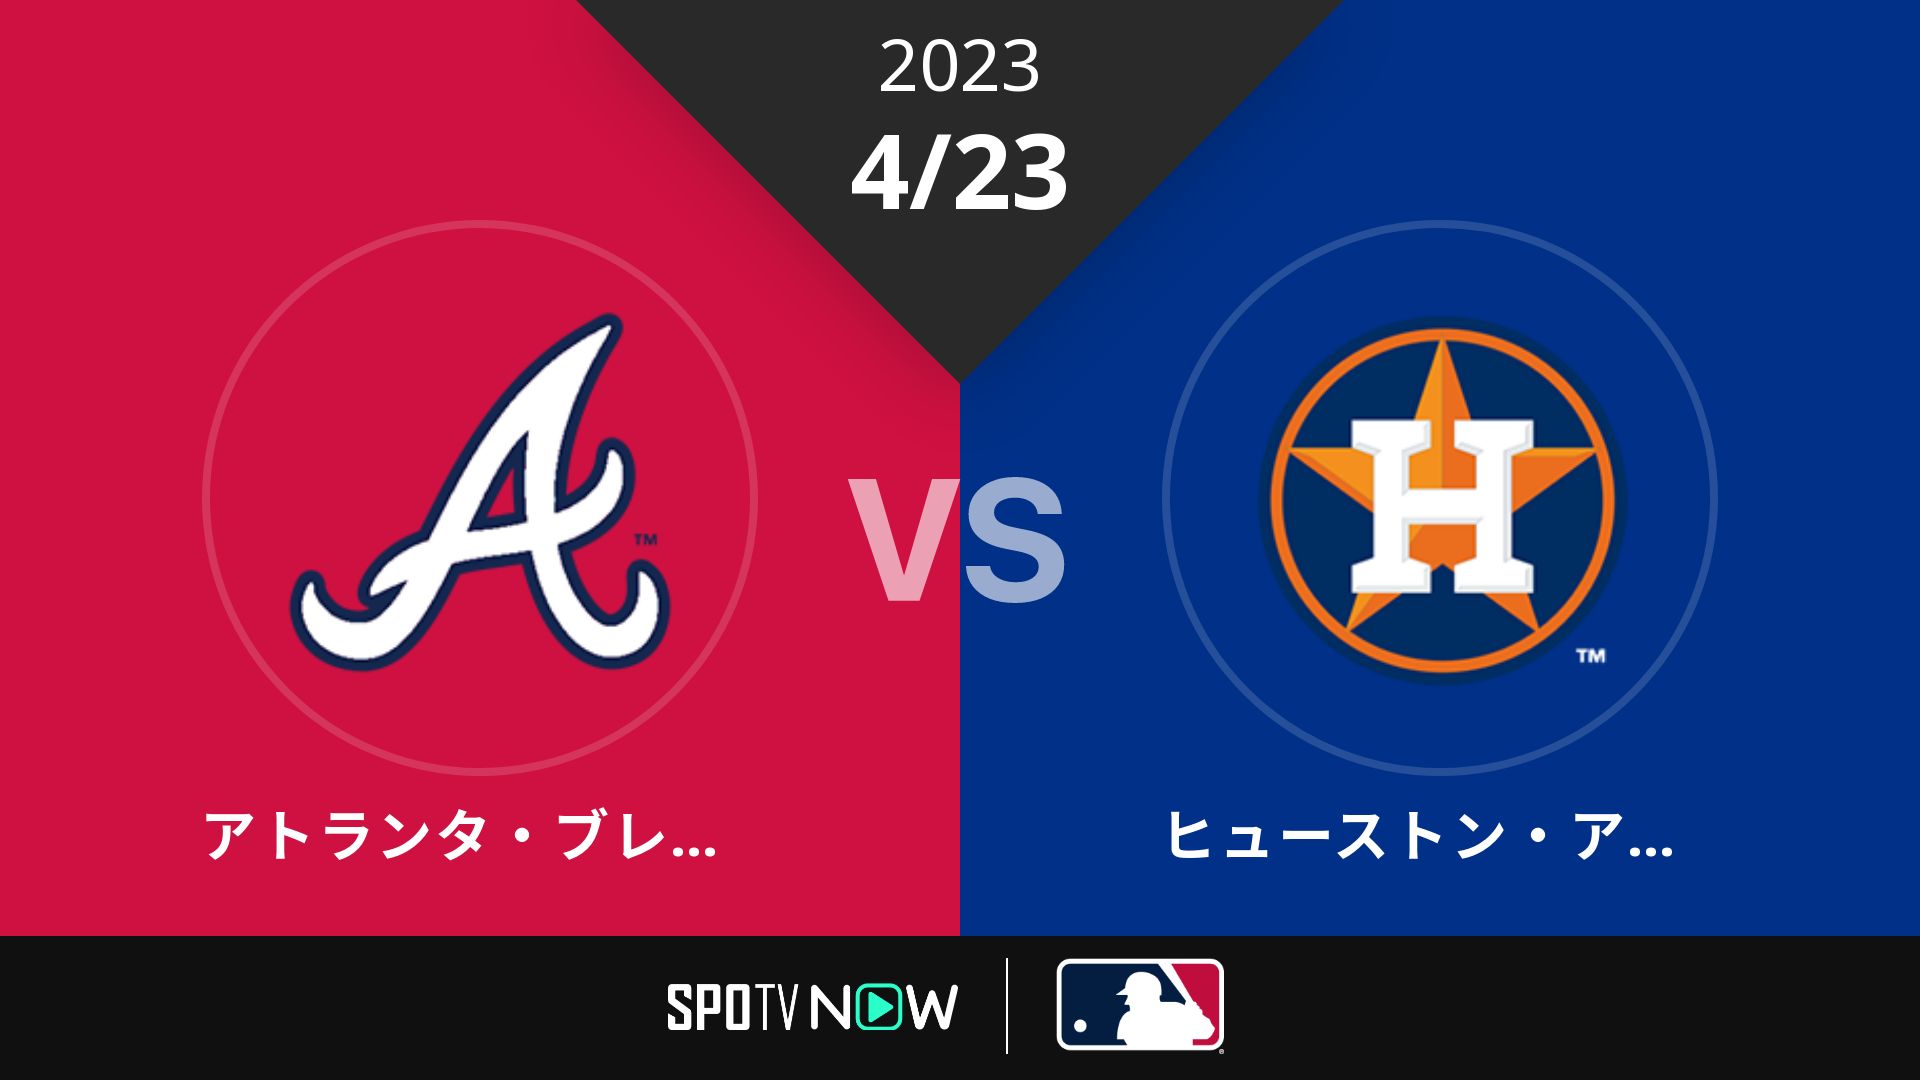 2023/4/23 ブレーブス vs アストロズ [MLB]